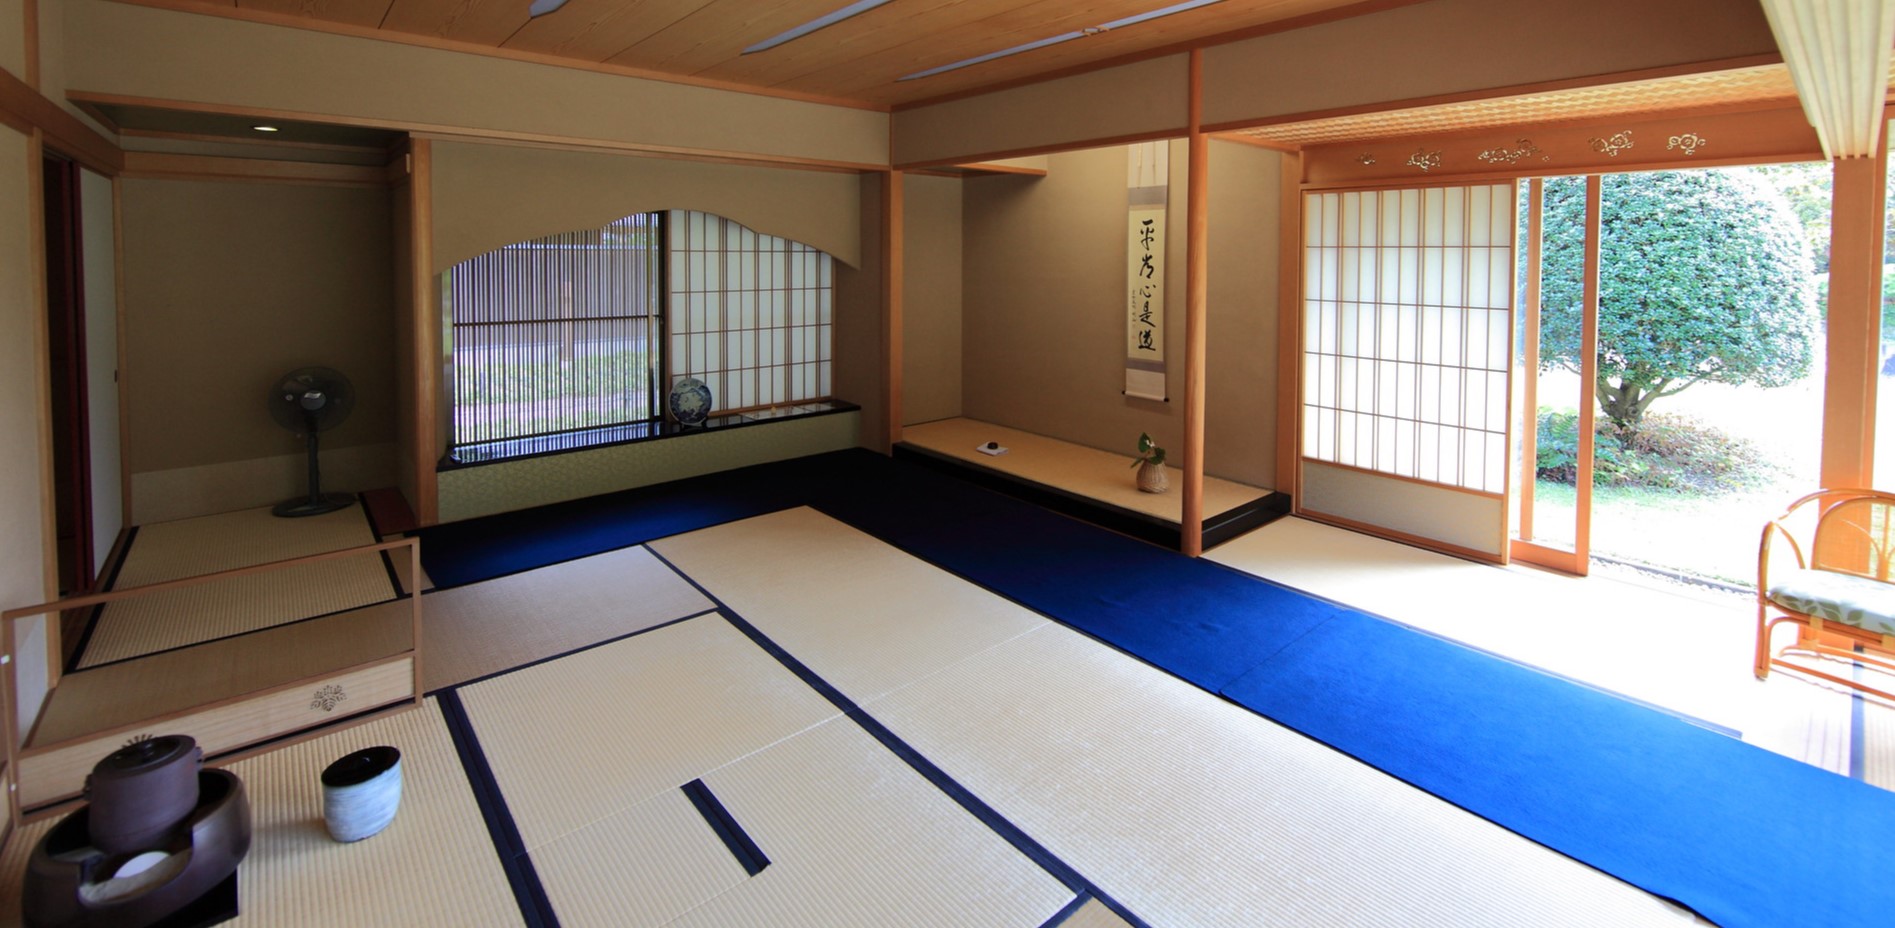 Японская комната не должна быть перегружена большим количеством мебели